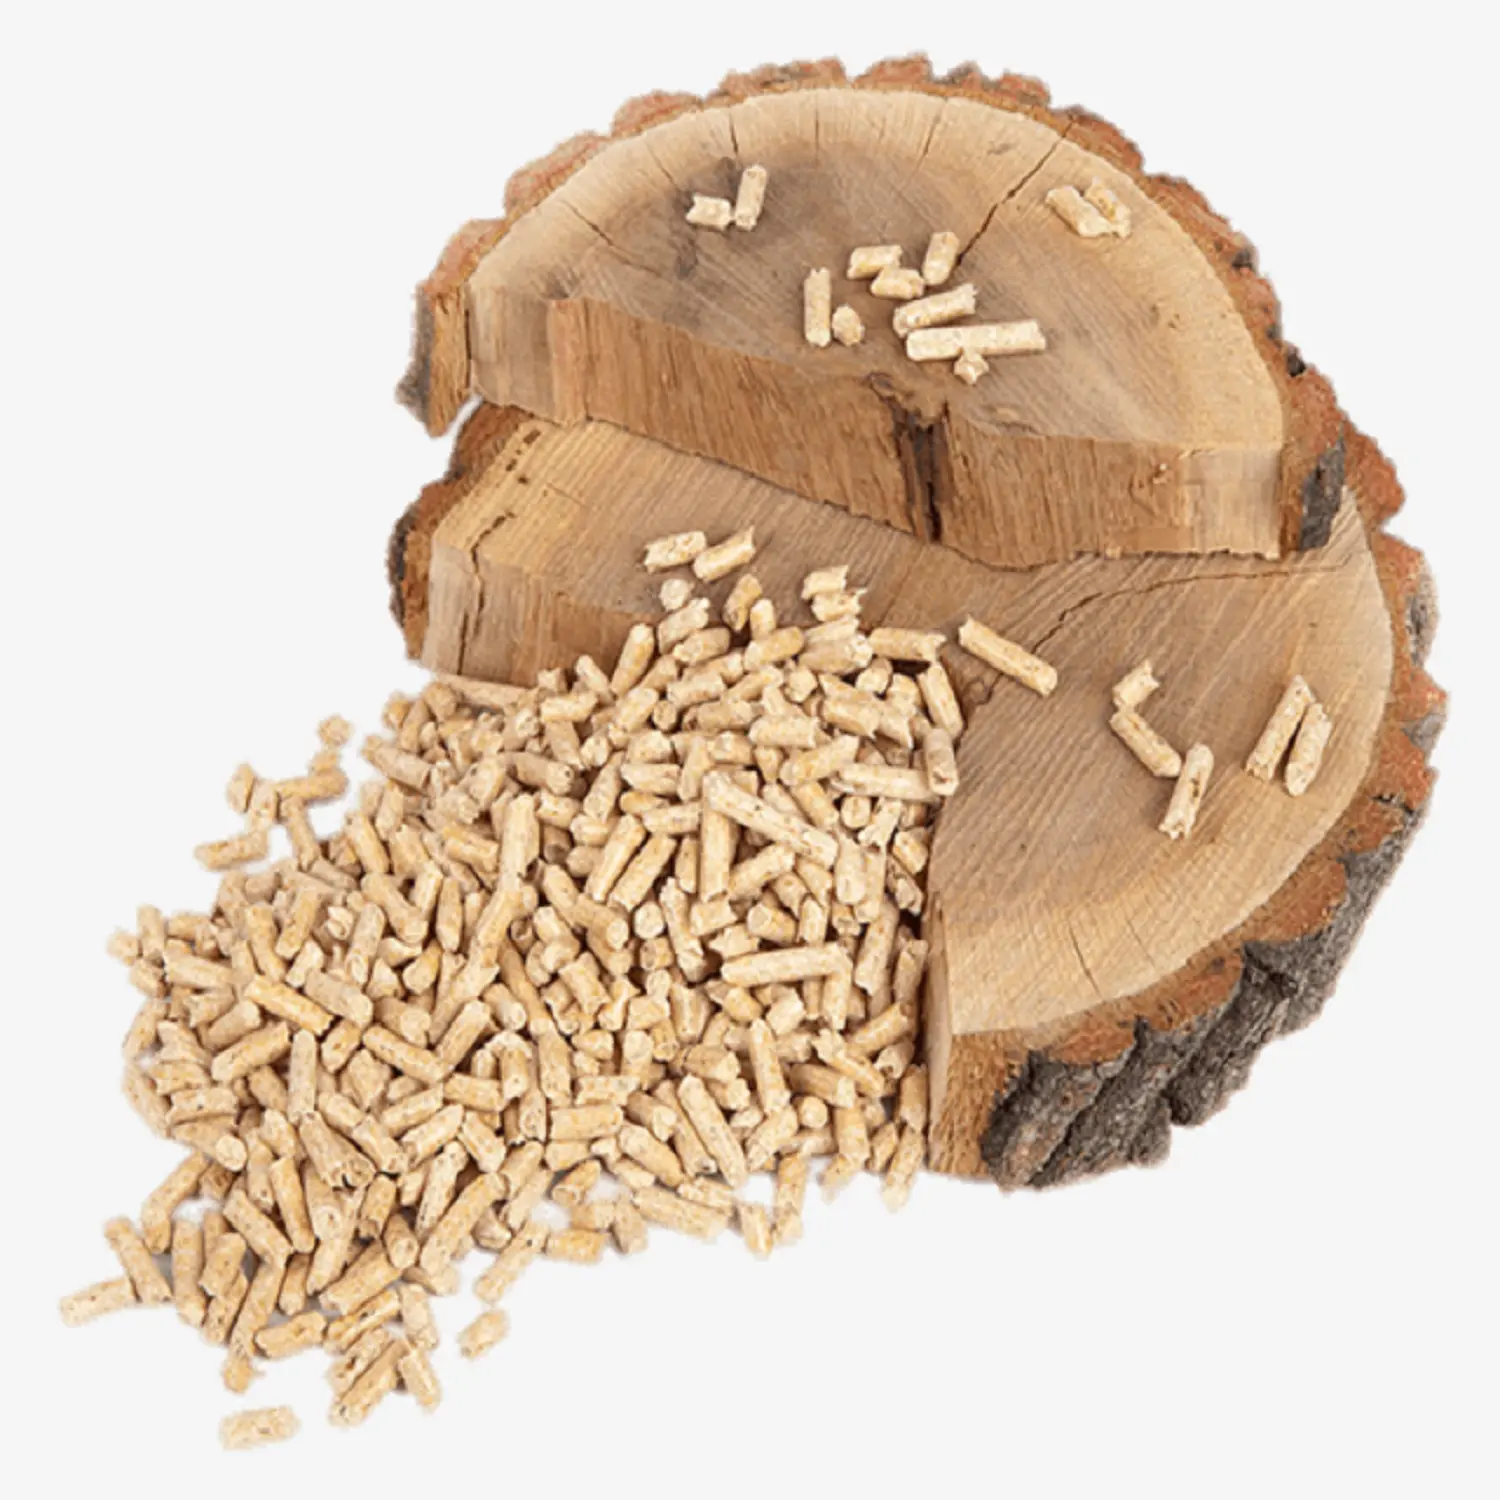 המחיר הטוב ביותר ביומסה Holzpellets אשוח עץ כדורי 6 מ"מ 15kg שקיות לחימום מערכת עץ גלולה מיל